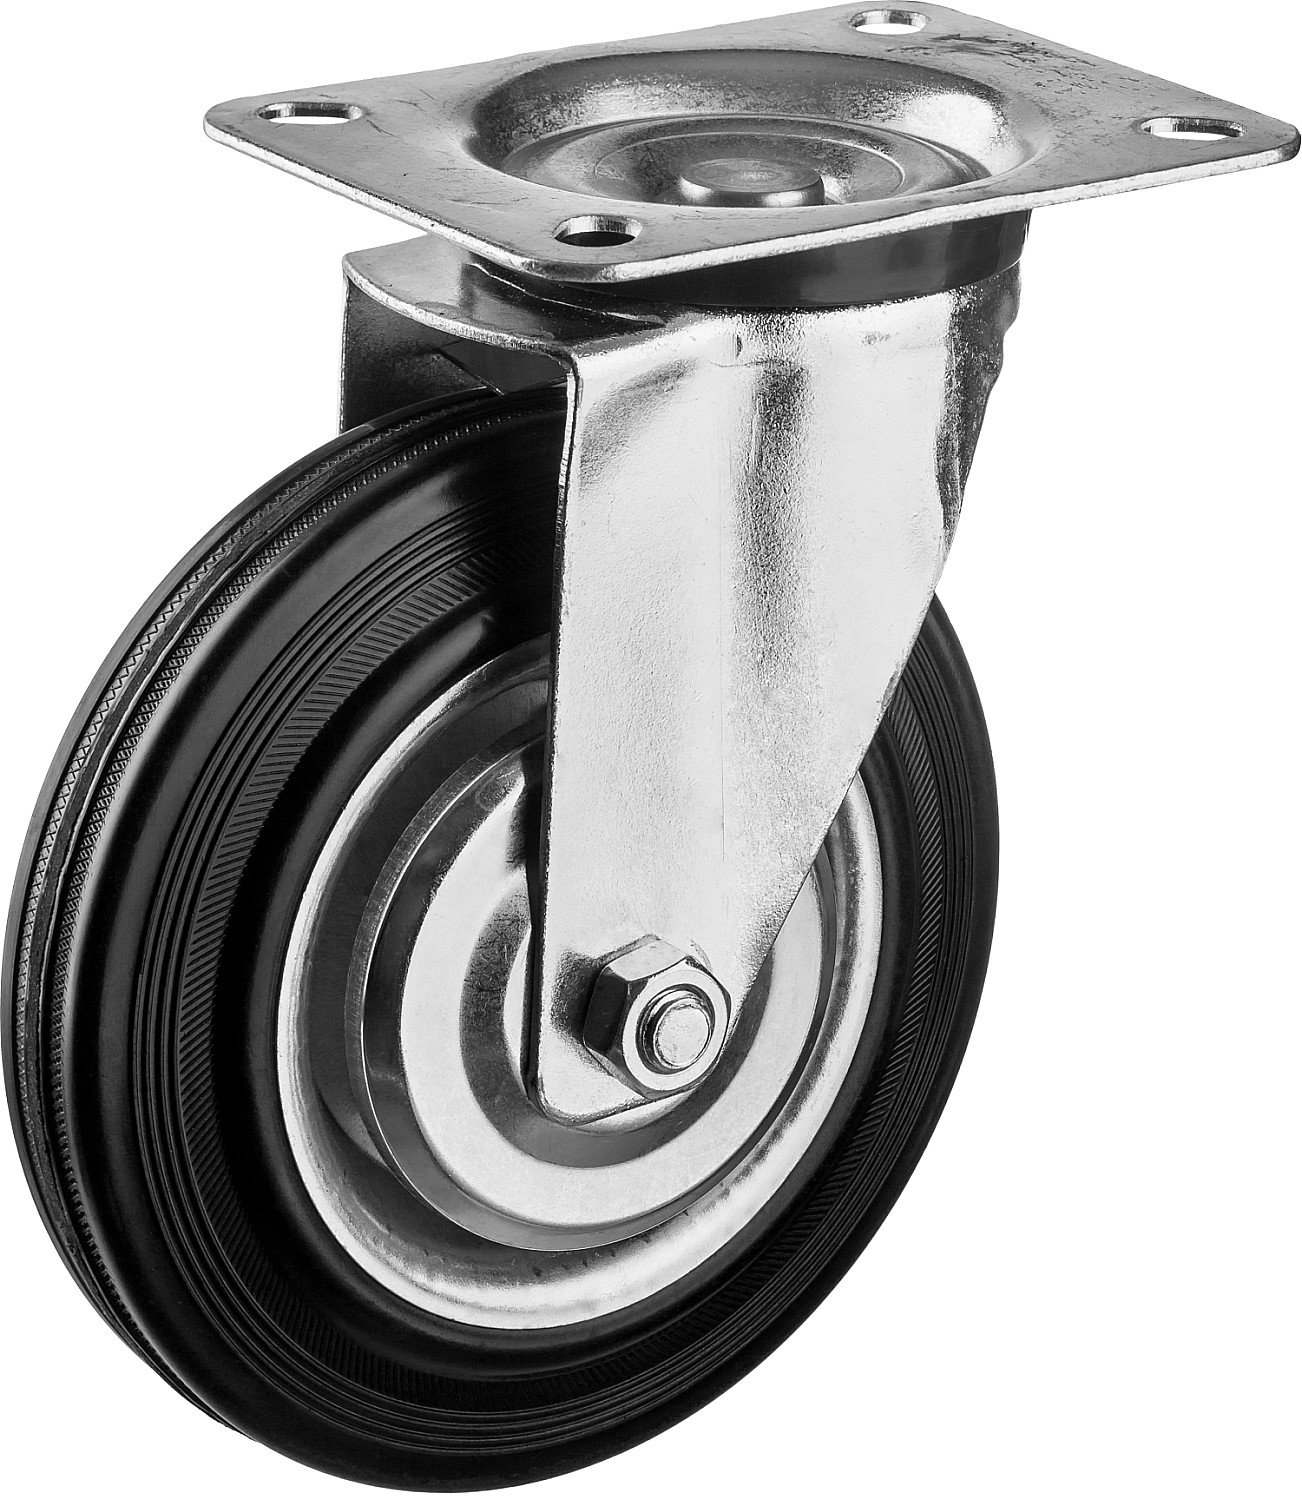 Поворотное колесо резина металл игольчатый подшипник ЗУБР Профессионал d 160 мм г п 145 кг (30936-160-S)